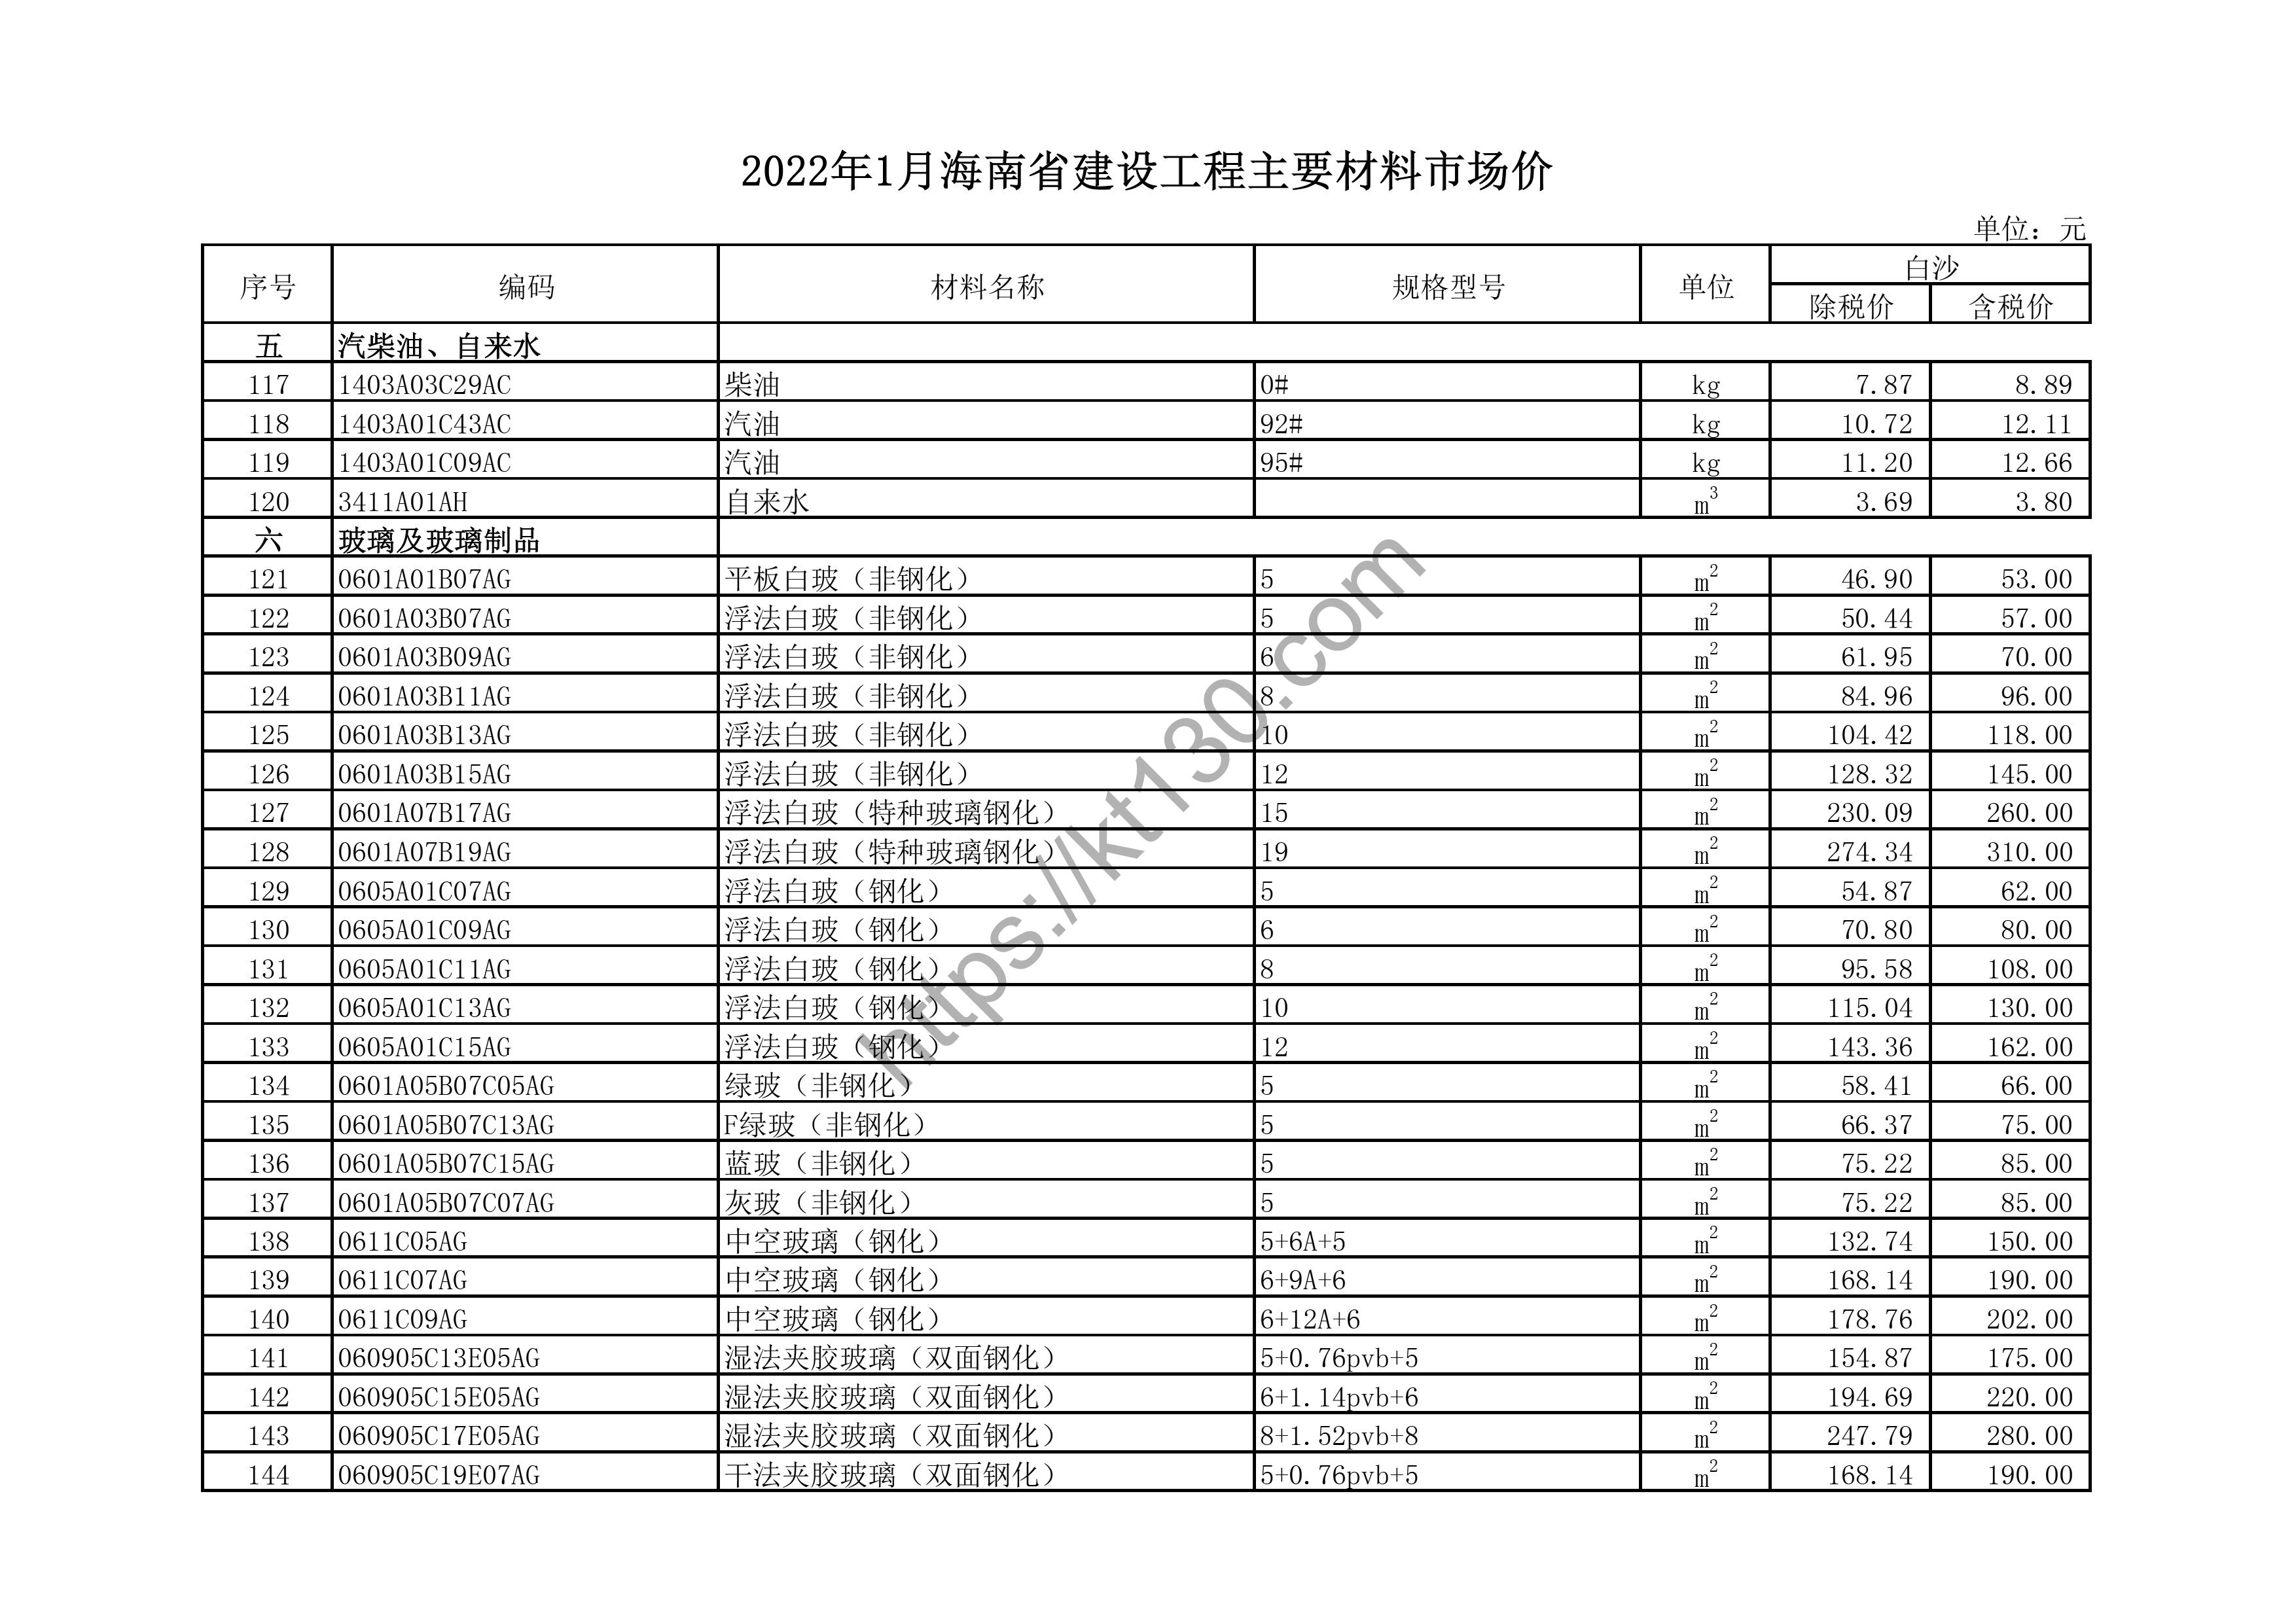 海南省2022年1月建筑材料价_干法夹胶玻璃_43737